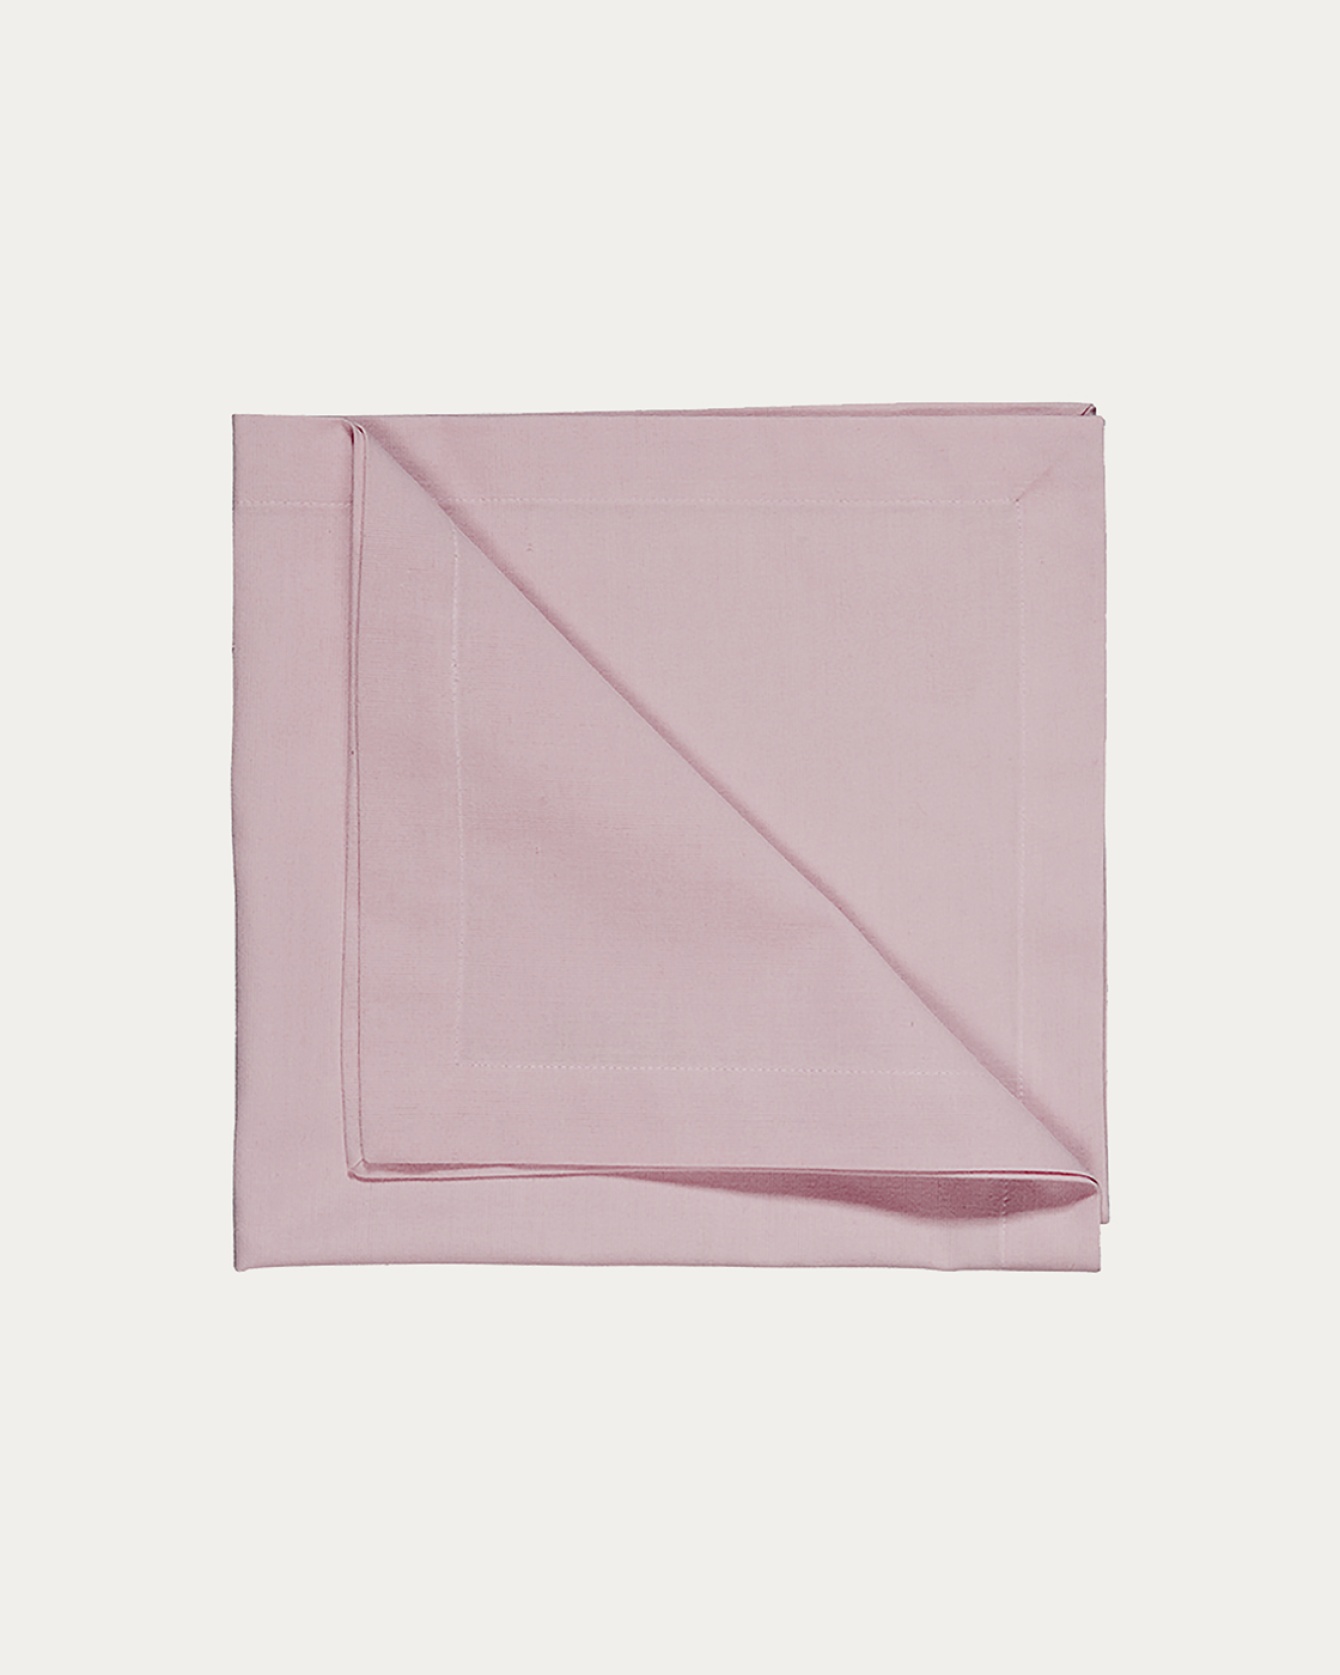 Produktbild hellrosa ROBERT Serviette aus weicher Baumwolle von LINUM DESIGN. Größe 45x45 cm und in 4er-Pack verkauft.